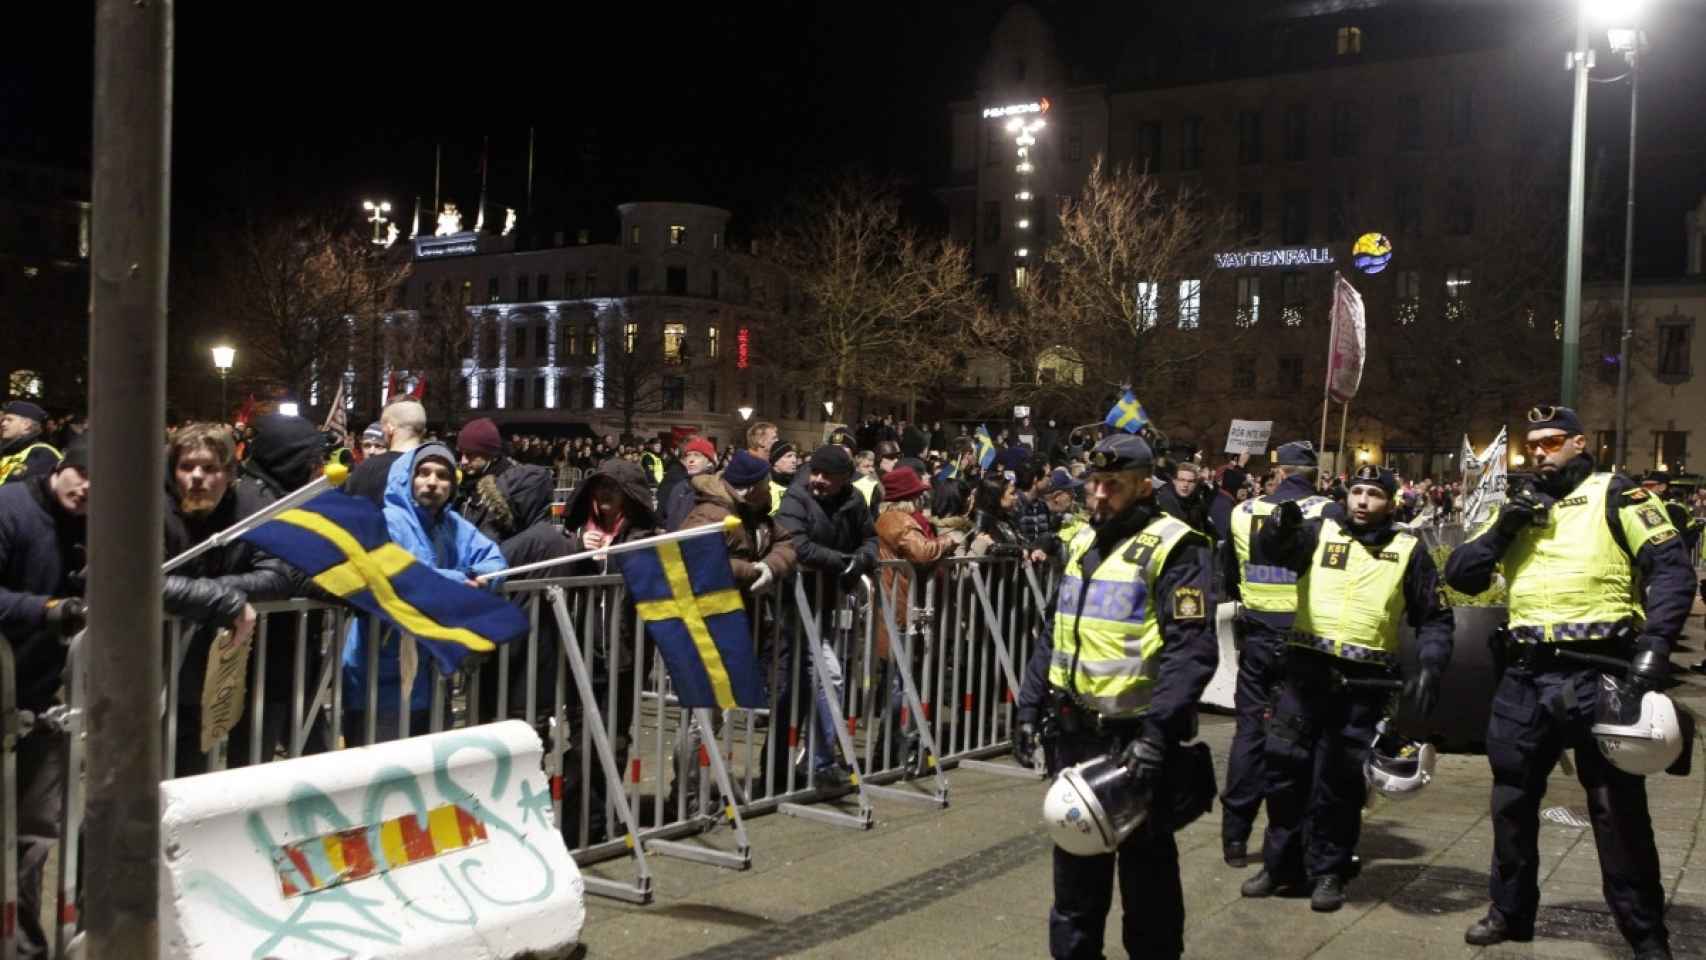 Policia sueca vigila los participantes en una manifestación islamofóbica a principios del verano / EFE